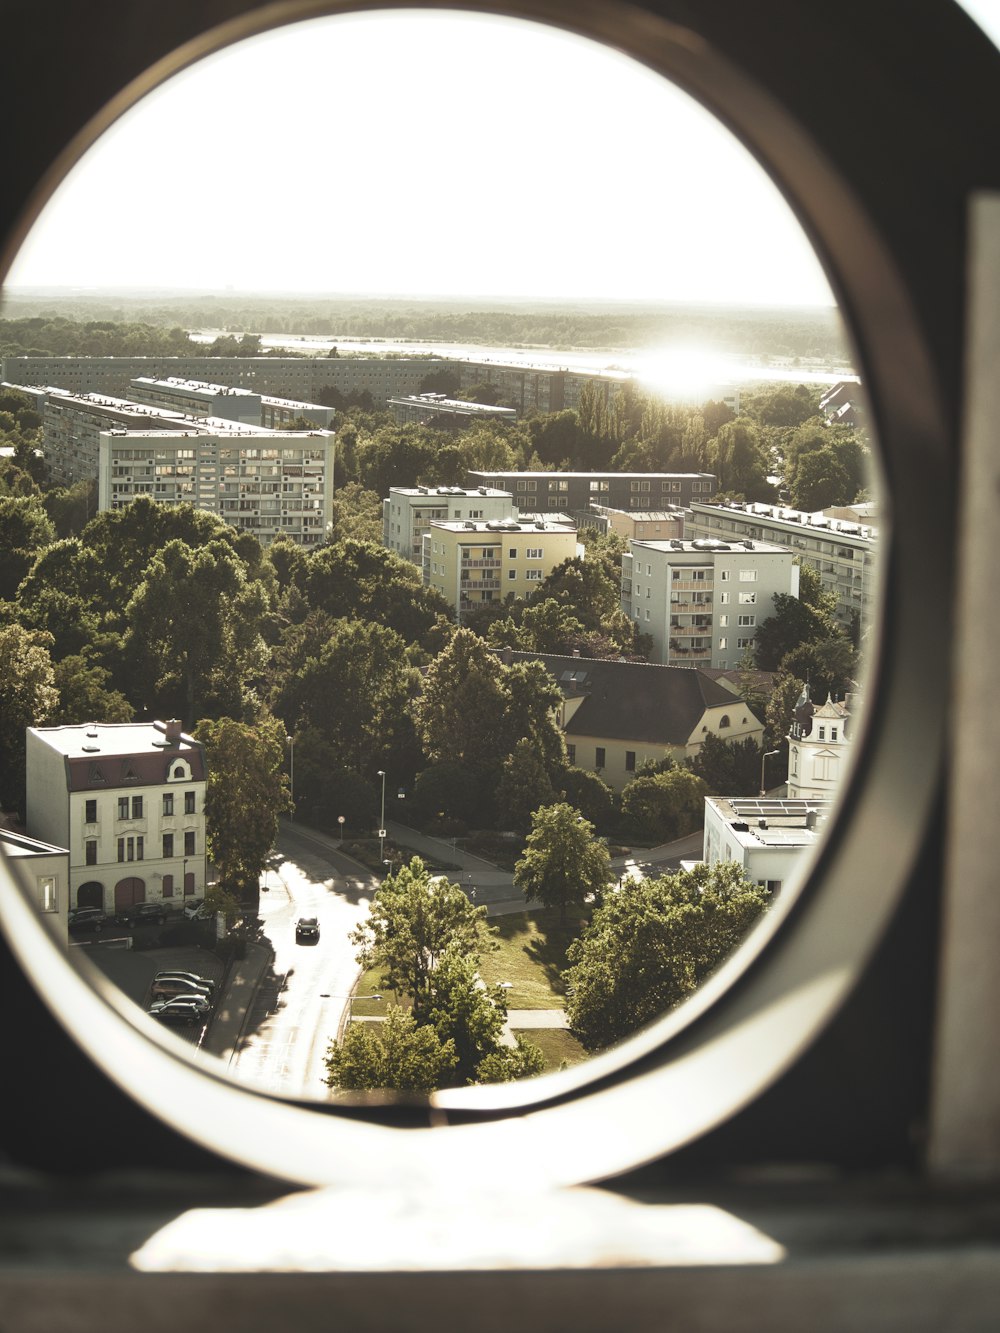 Blick auf eine Stadt durch ein rundes Fenster